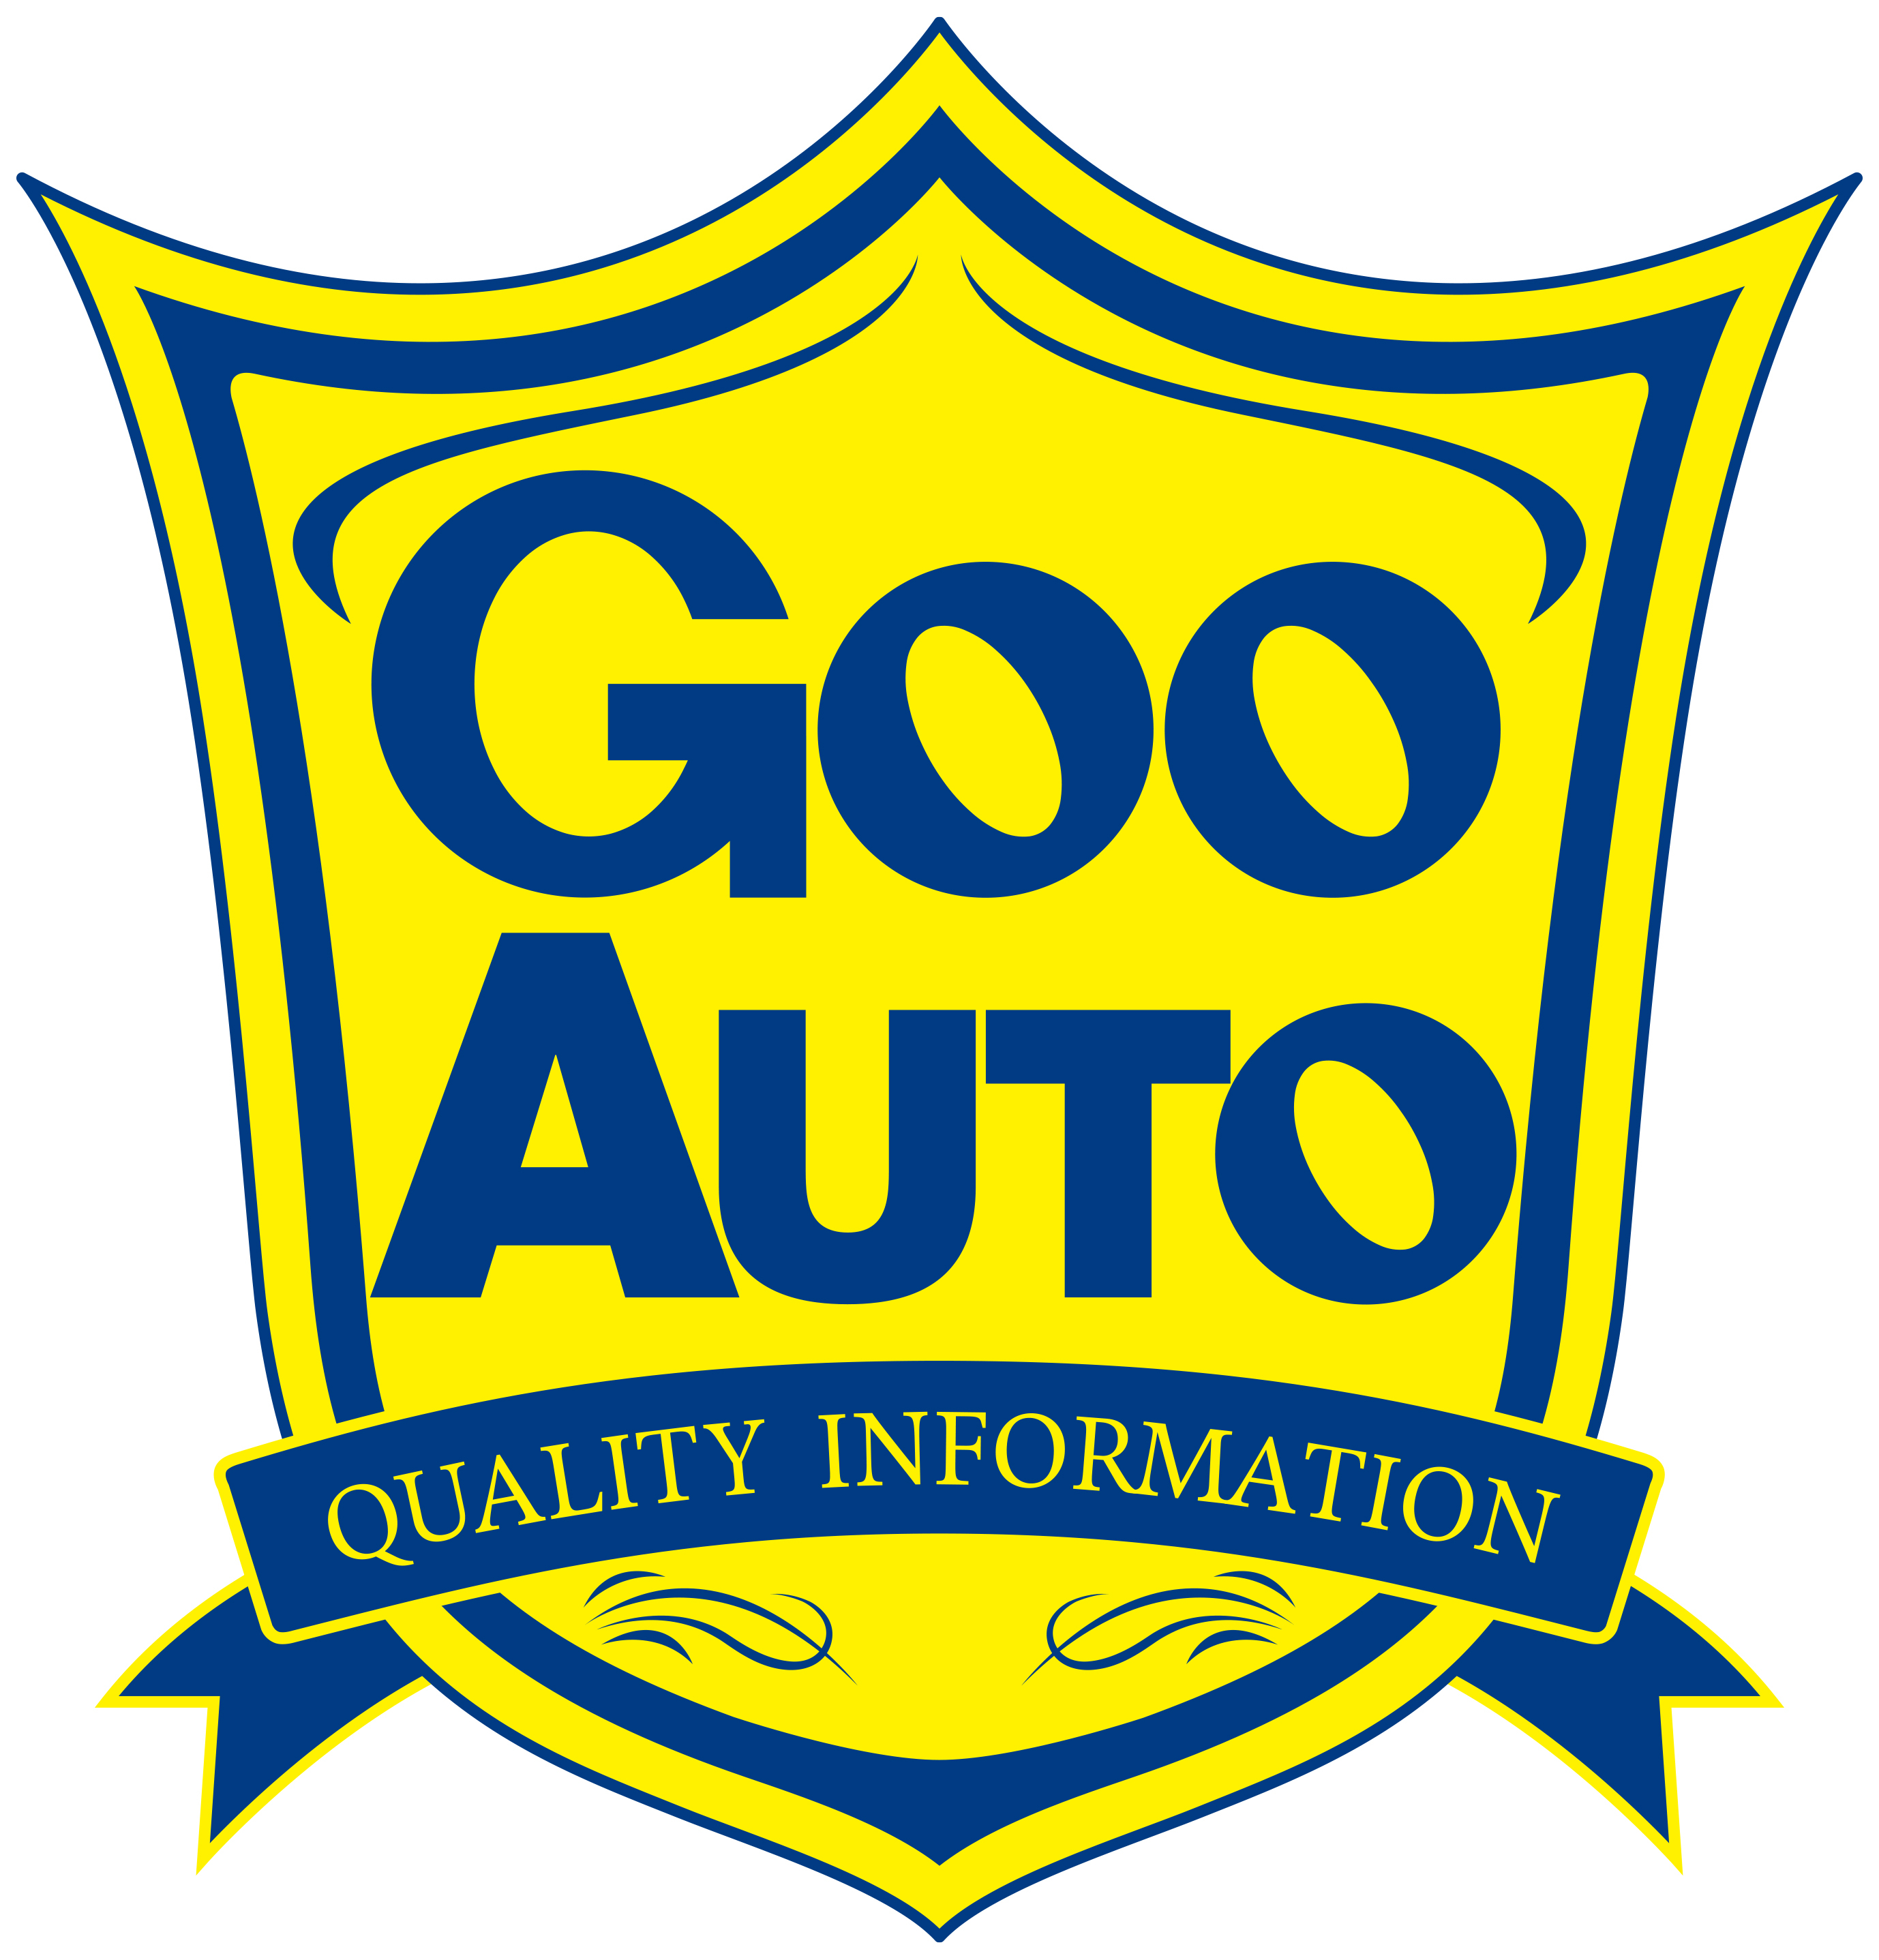 国内の中古車輸出業者と海外バイヤーつなぐポータルサイト Gooauto の提供を開始 株式会社プロトコーポレーションのプレスリリース